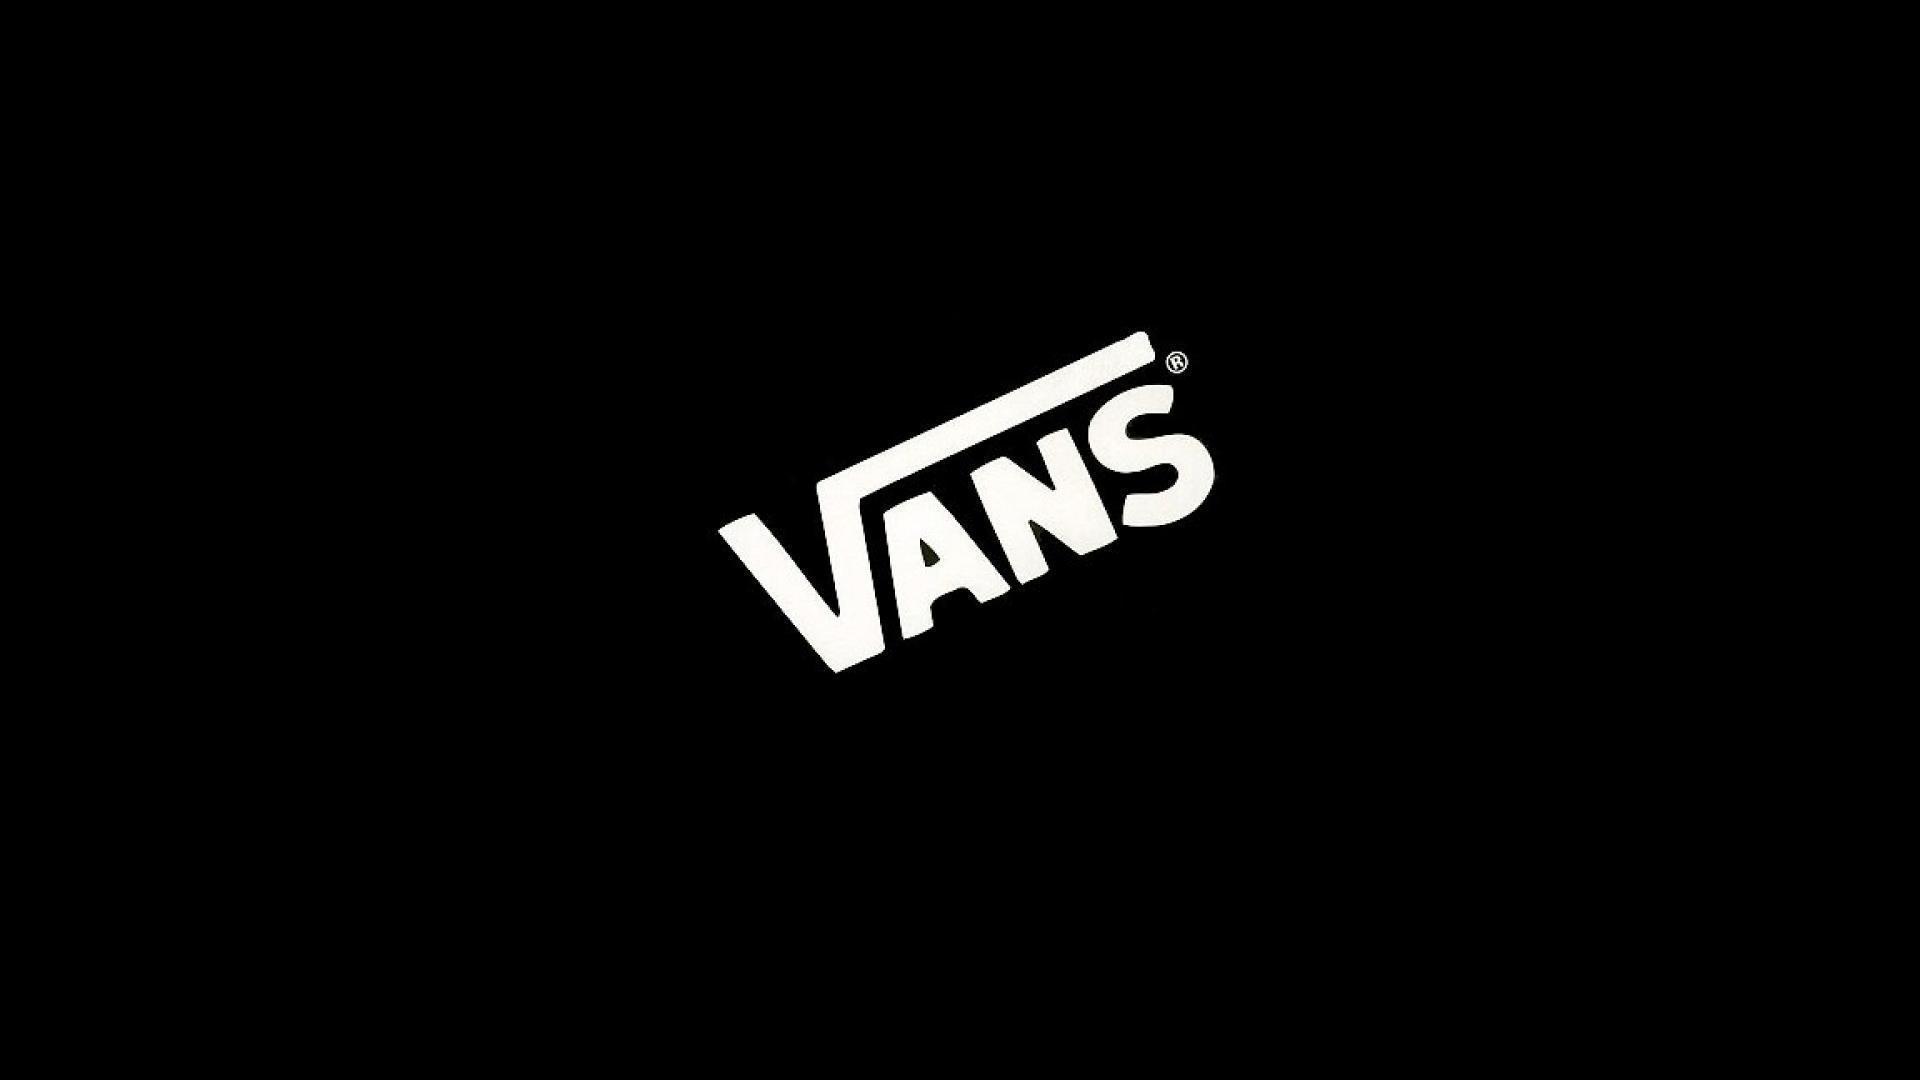 Vans Wallpapers - Top Free Vans 